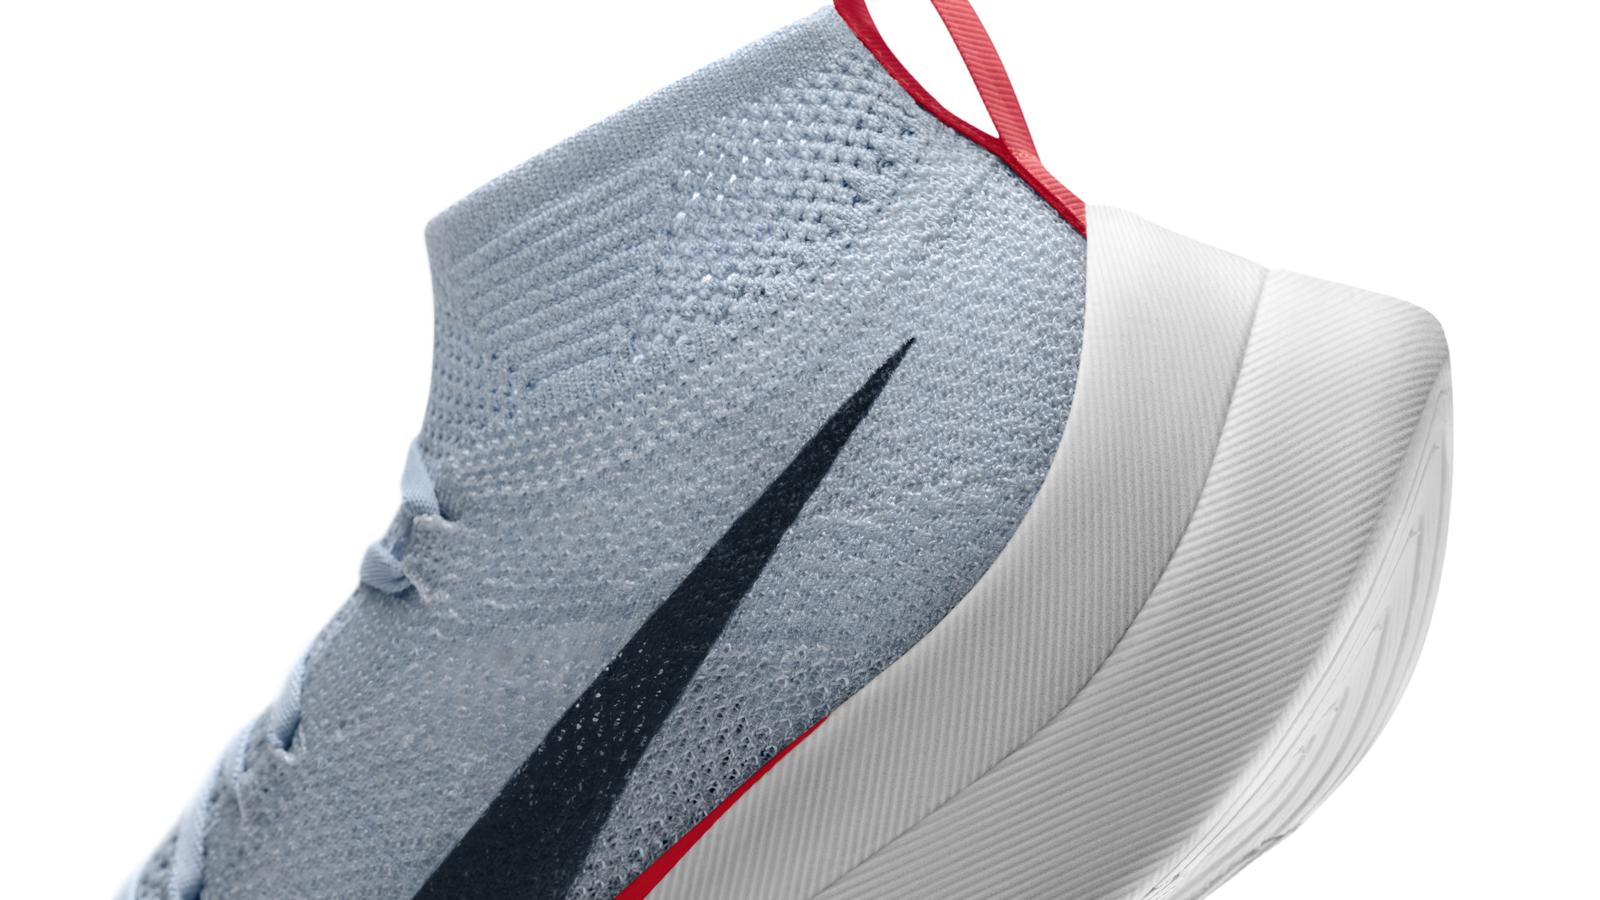 Breaking2 – Nike dévoile la chaussure pour courir le marathon en moins de 2h